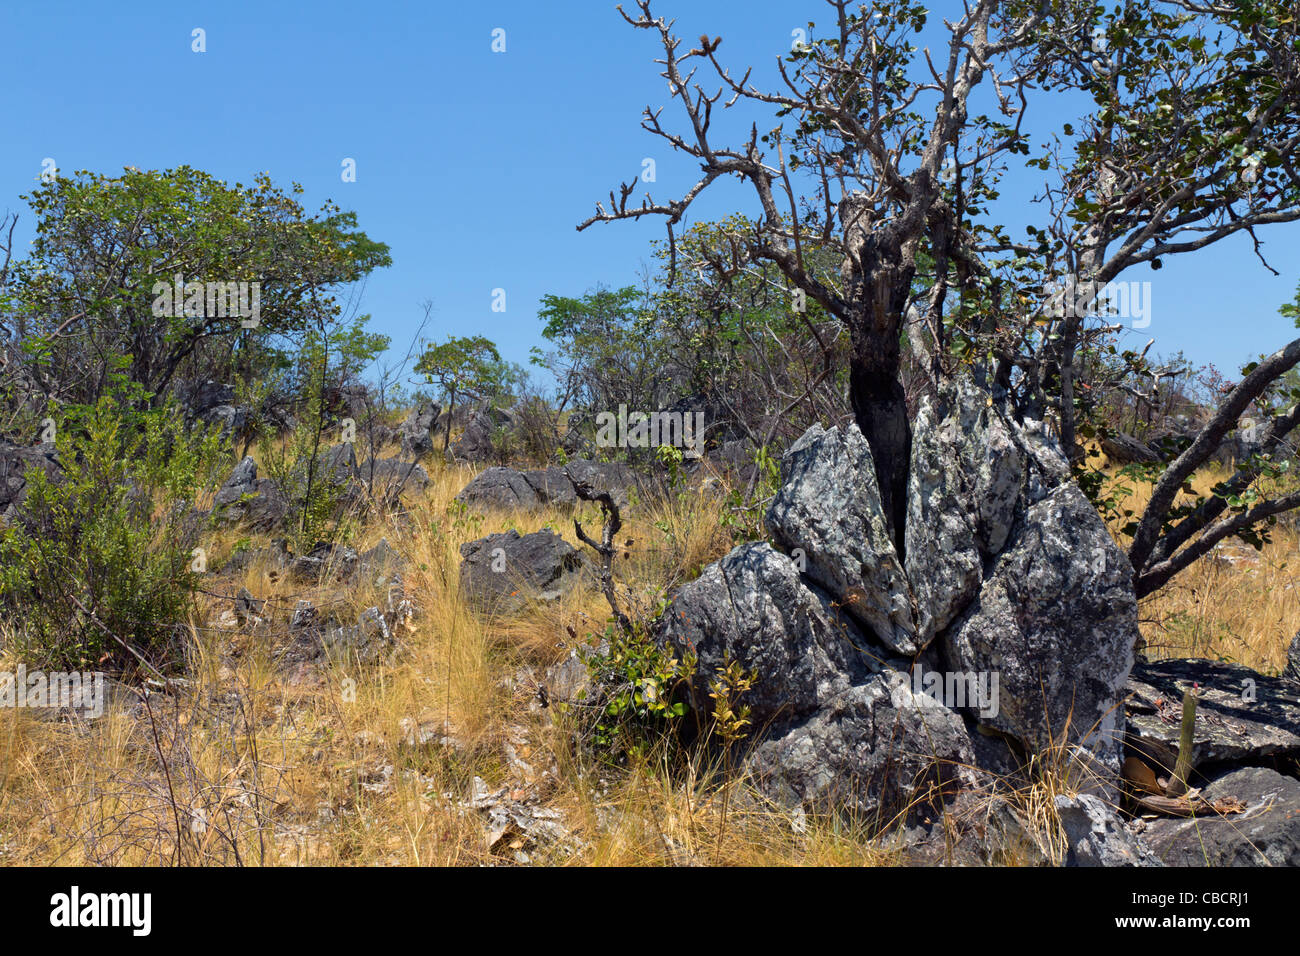 Savannenbiom genannt Cerrado, Brasilien Highlands: Vegetation auf Felsvorsprüngen: Baum ist Wunderlichia crulsiana aus der Familie der Asteraceae. Der Cerrado ist ein BiodiversitätsHotspot. Stockfoto